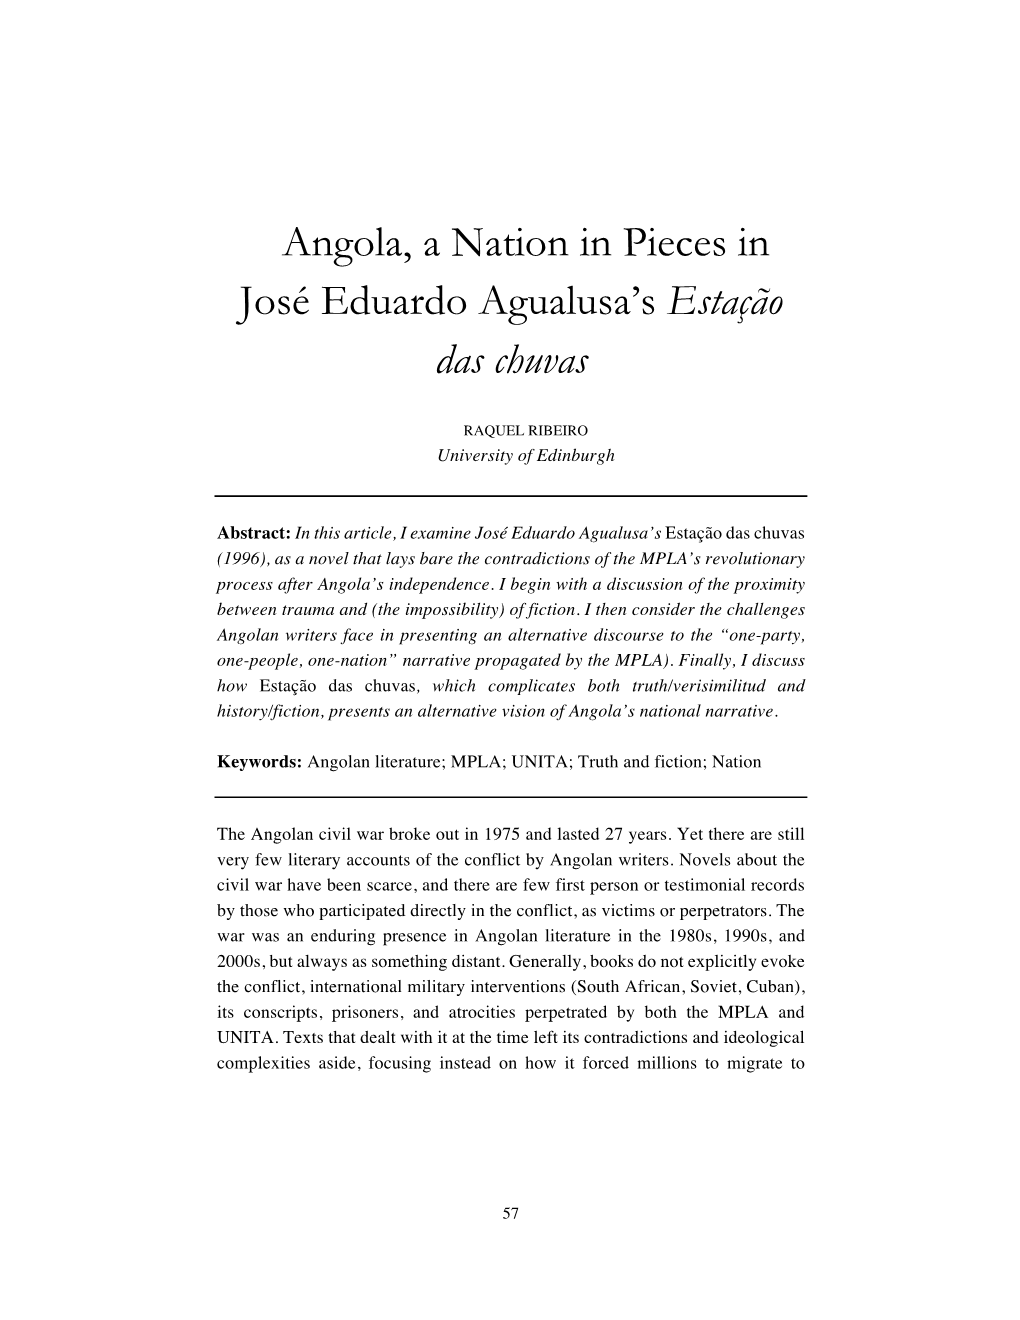 Angola, a Nation in Pieces in José Eduardo Agualusa's Estação Das